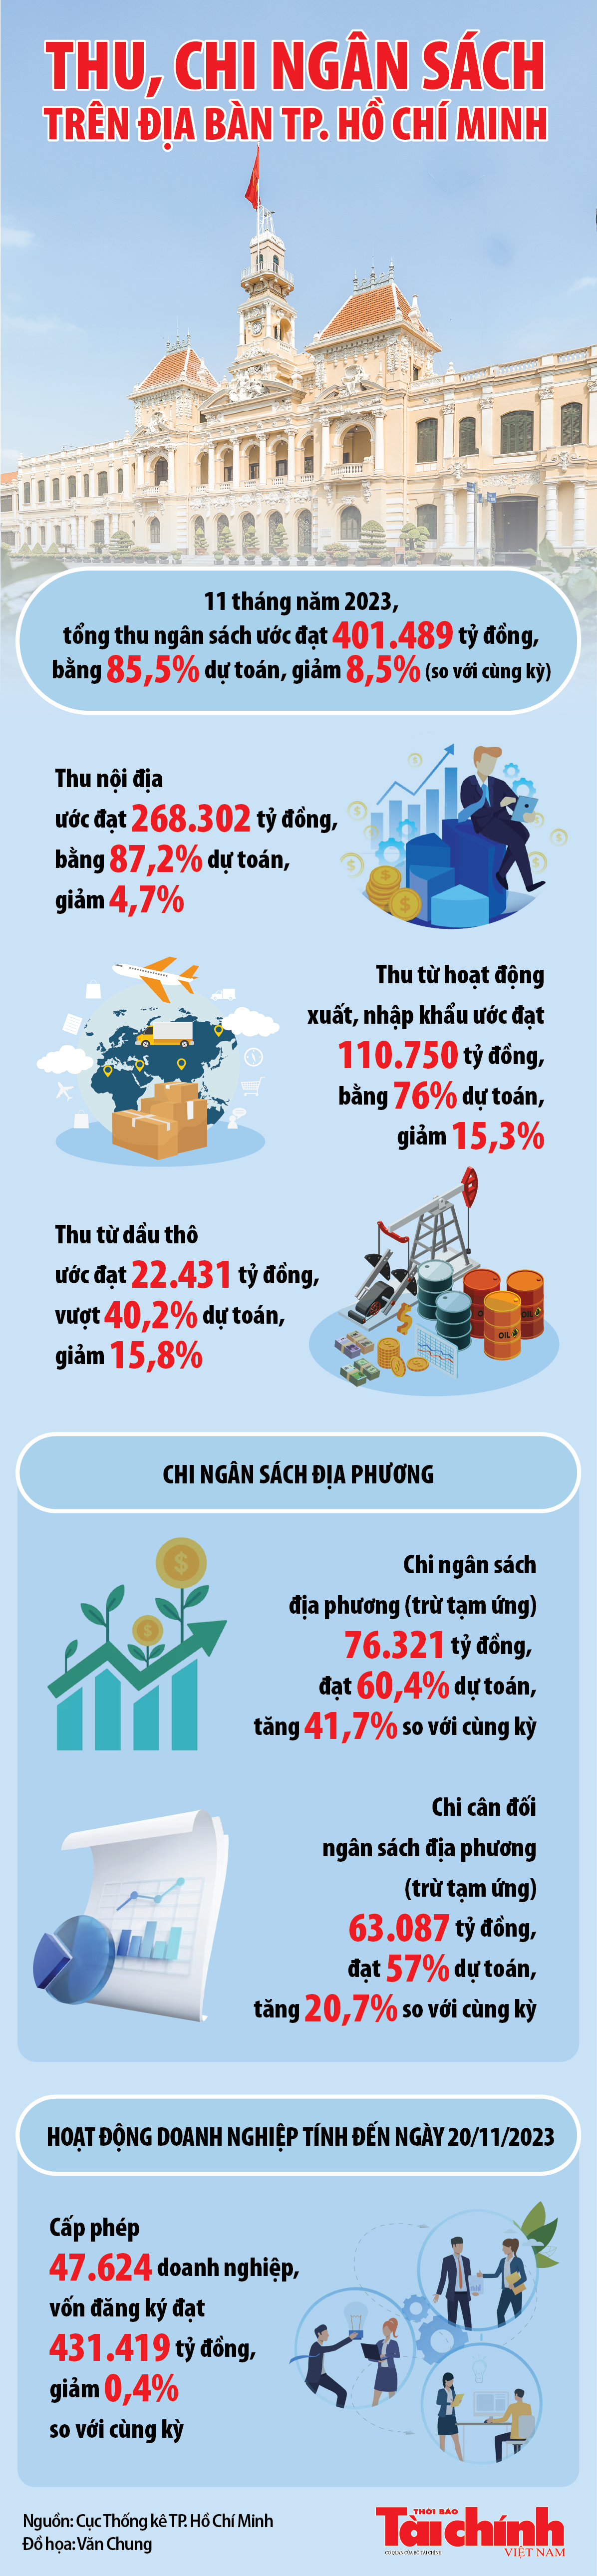 TP. Hồ Chí Minh: Thu ngân sách 11 tháng ước đạt 401.489 tỷ đồng